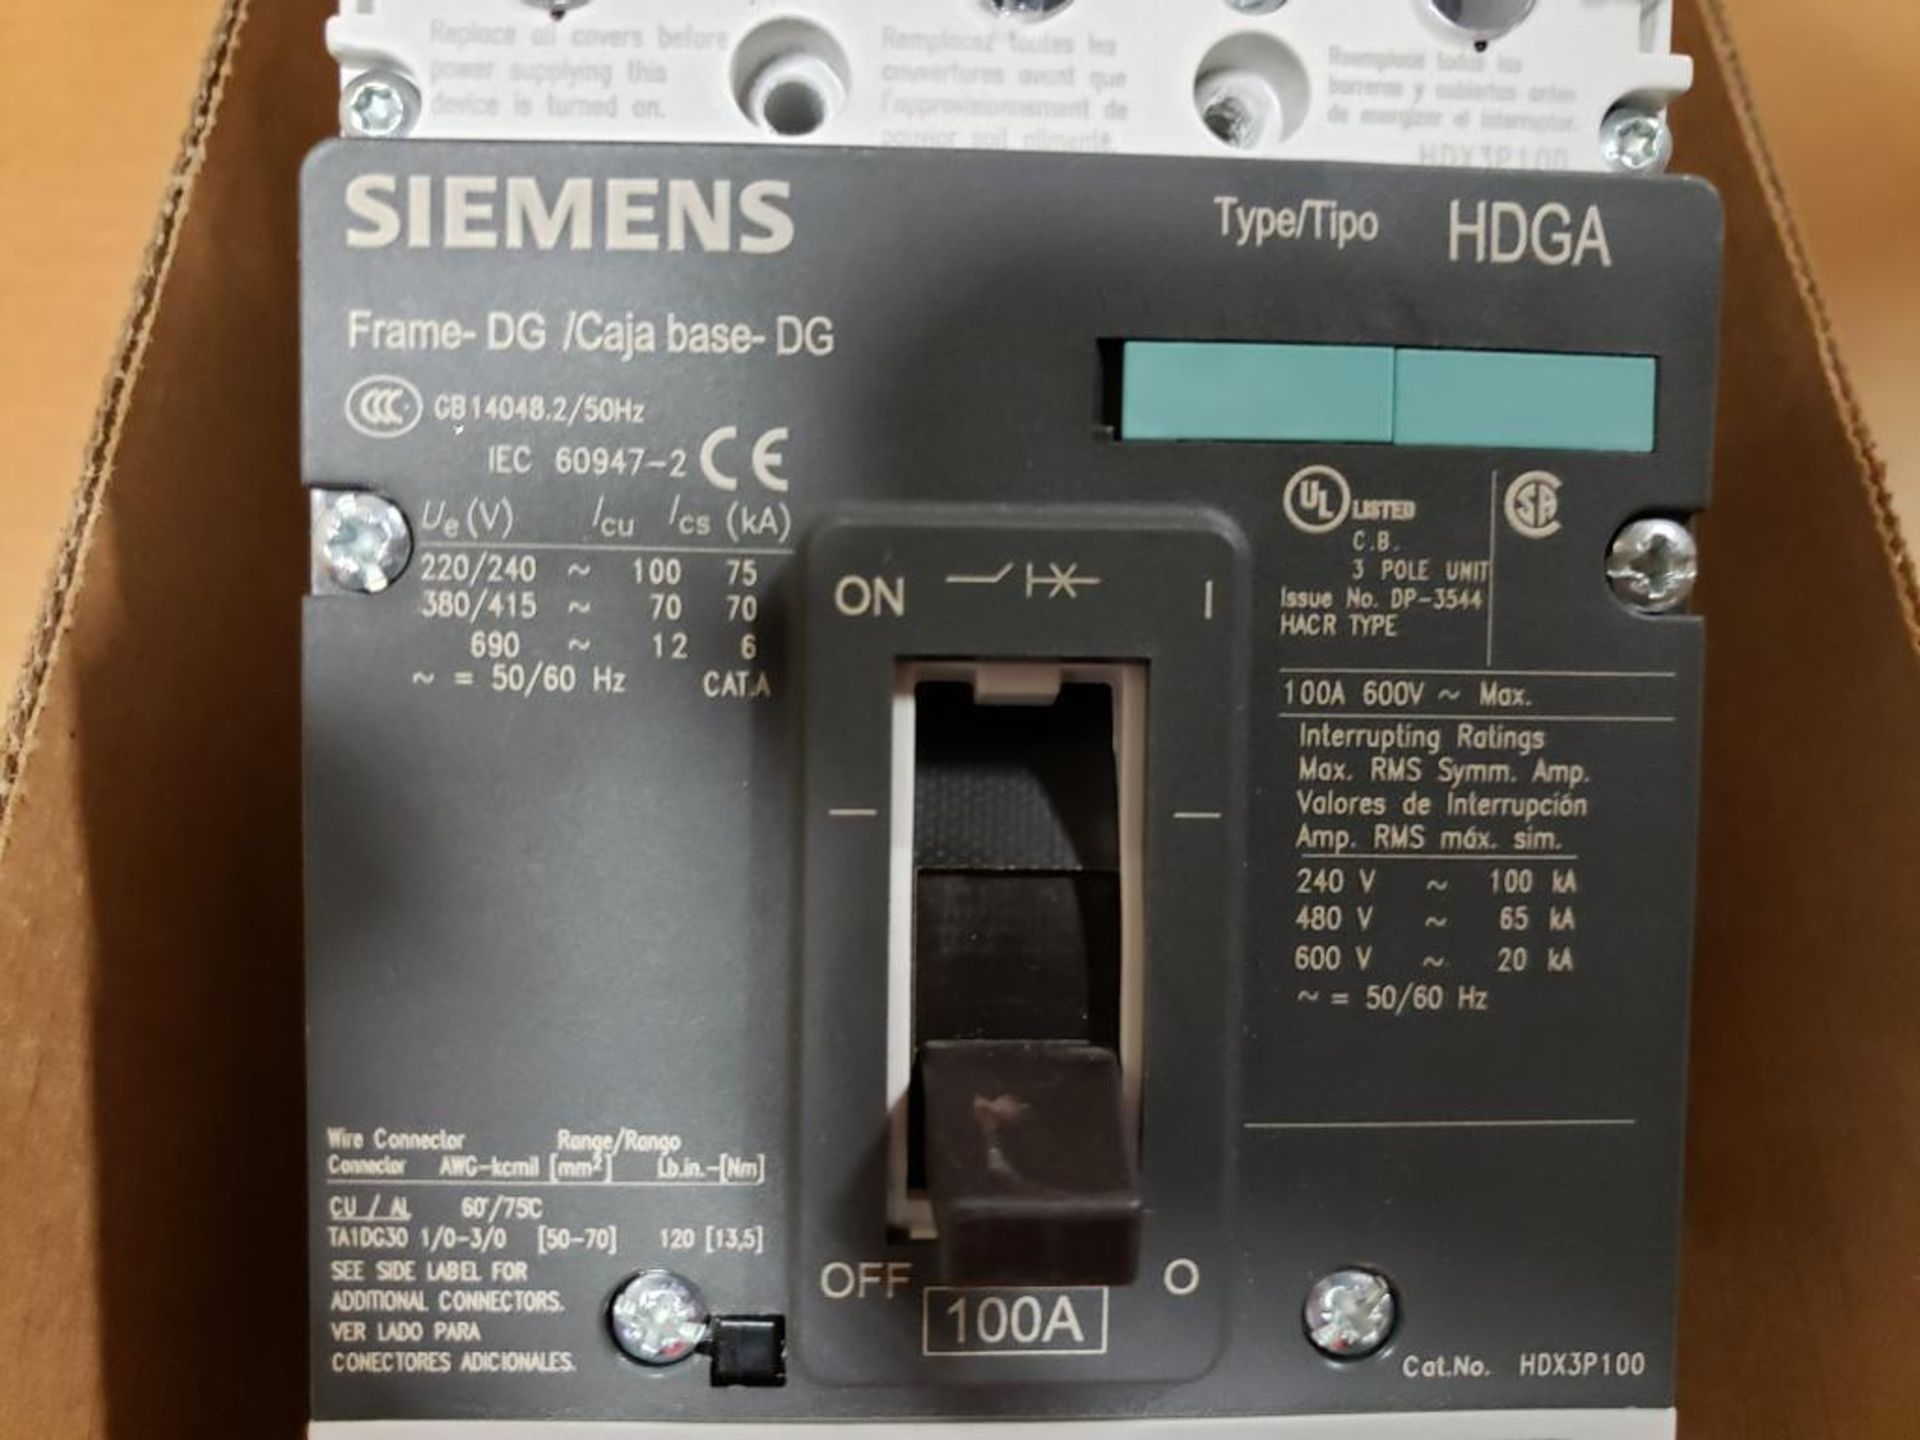 Siemens DP-3544 100A circuit breaker. - Image 5 of 9